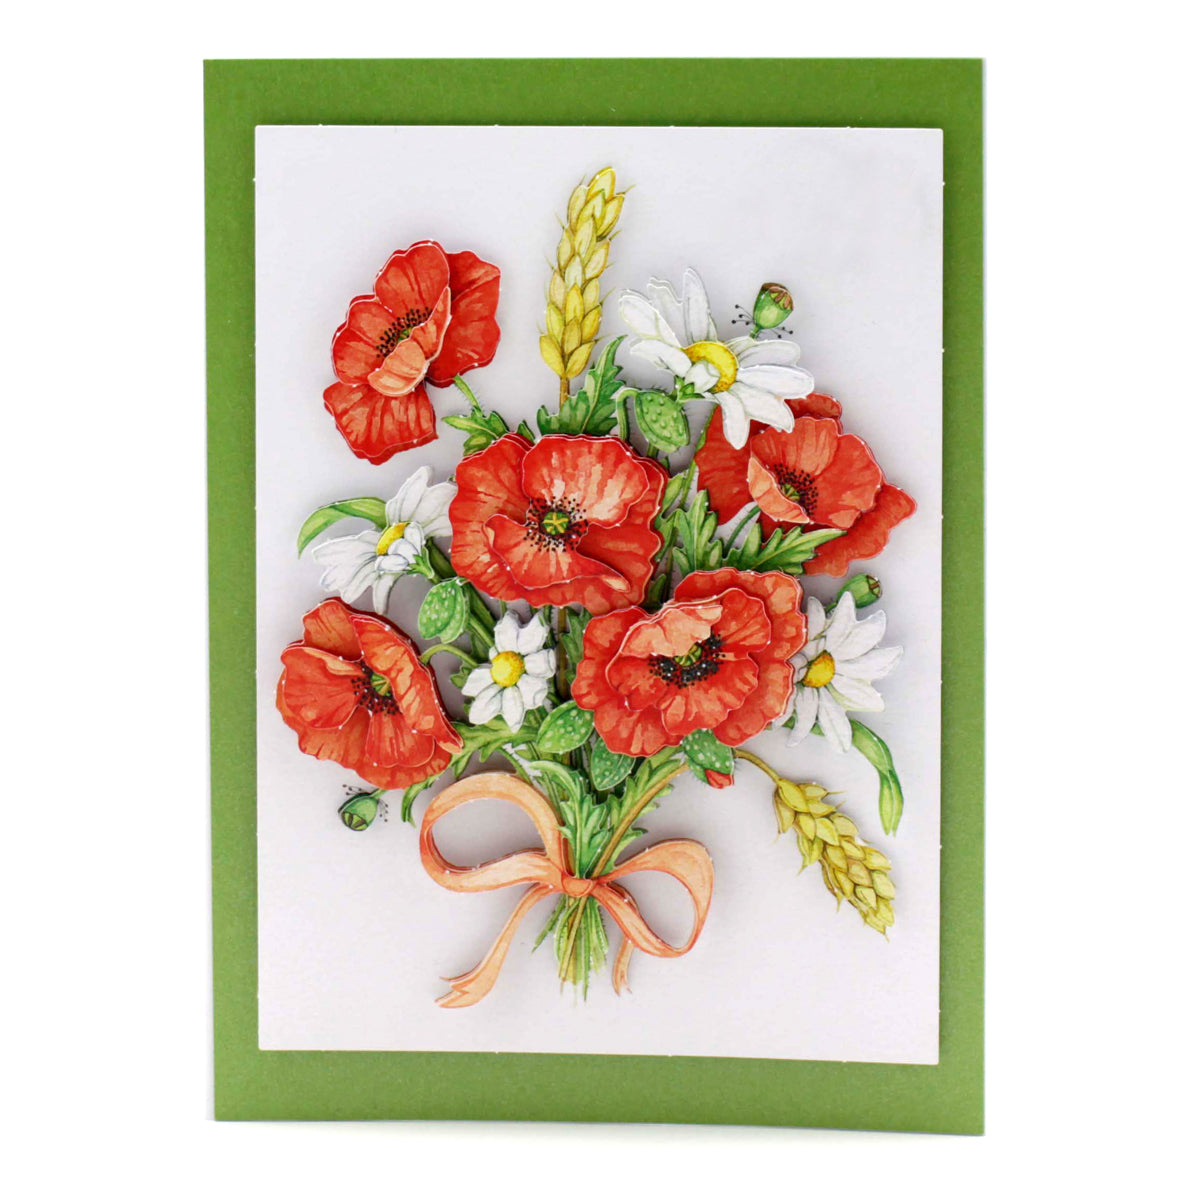 Die Cut Decoupage – Pretty Flowers (Pack of 24)